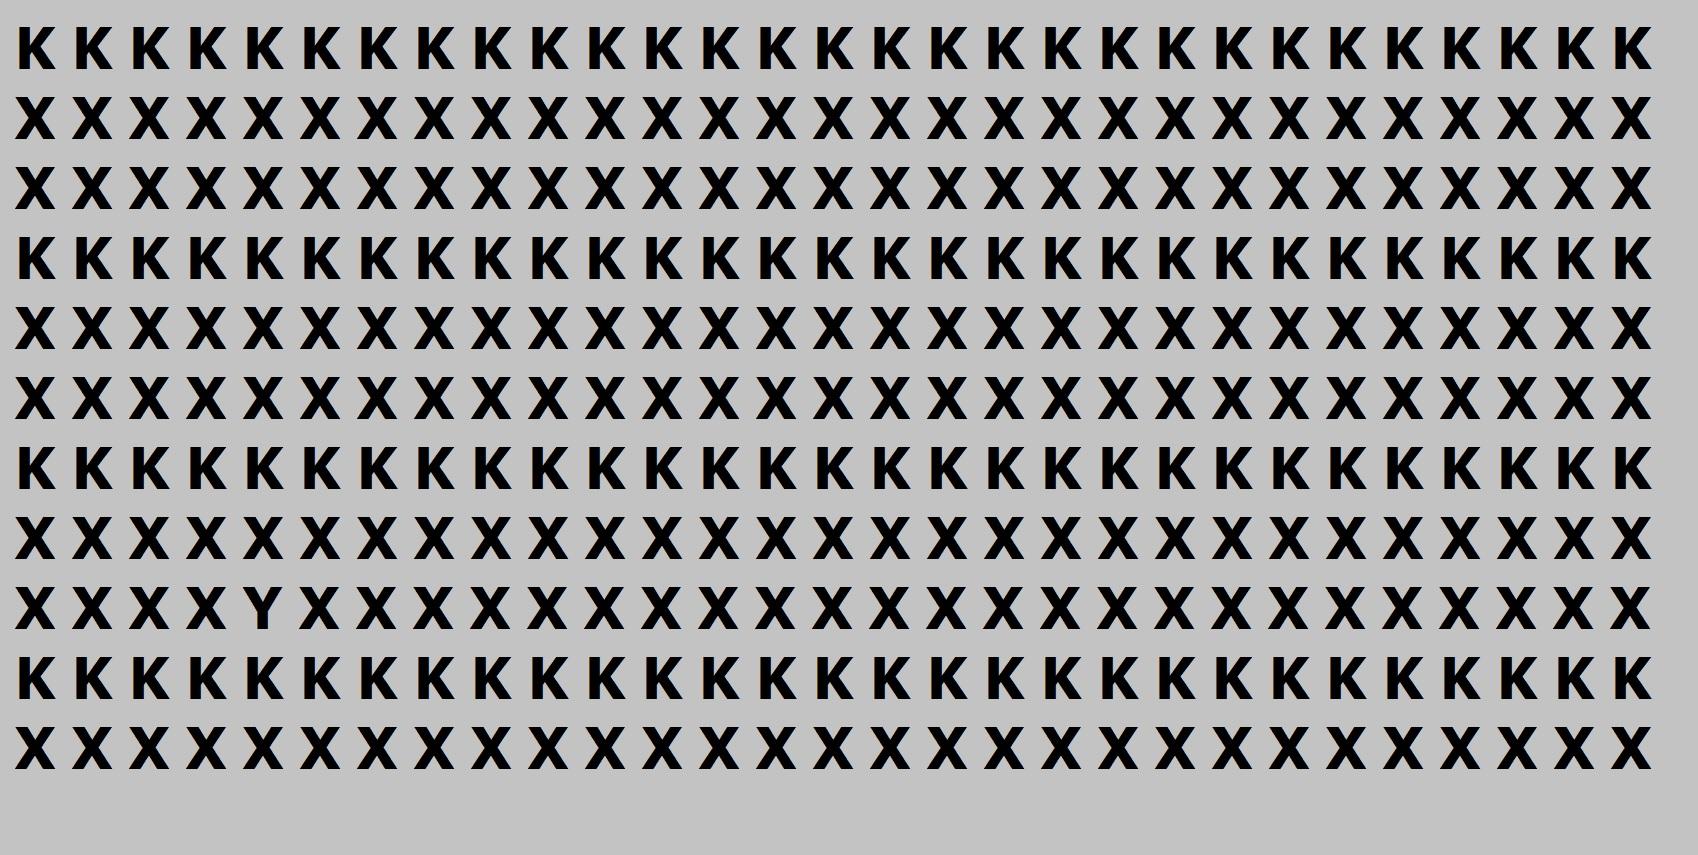 imagine cu literele X si K pe fundal gri, formand o iluzie optica ce ascunde un test de inteligenta